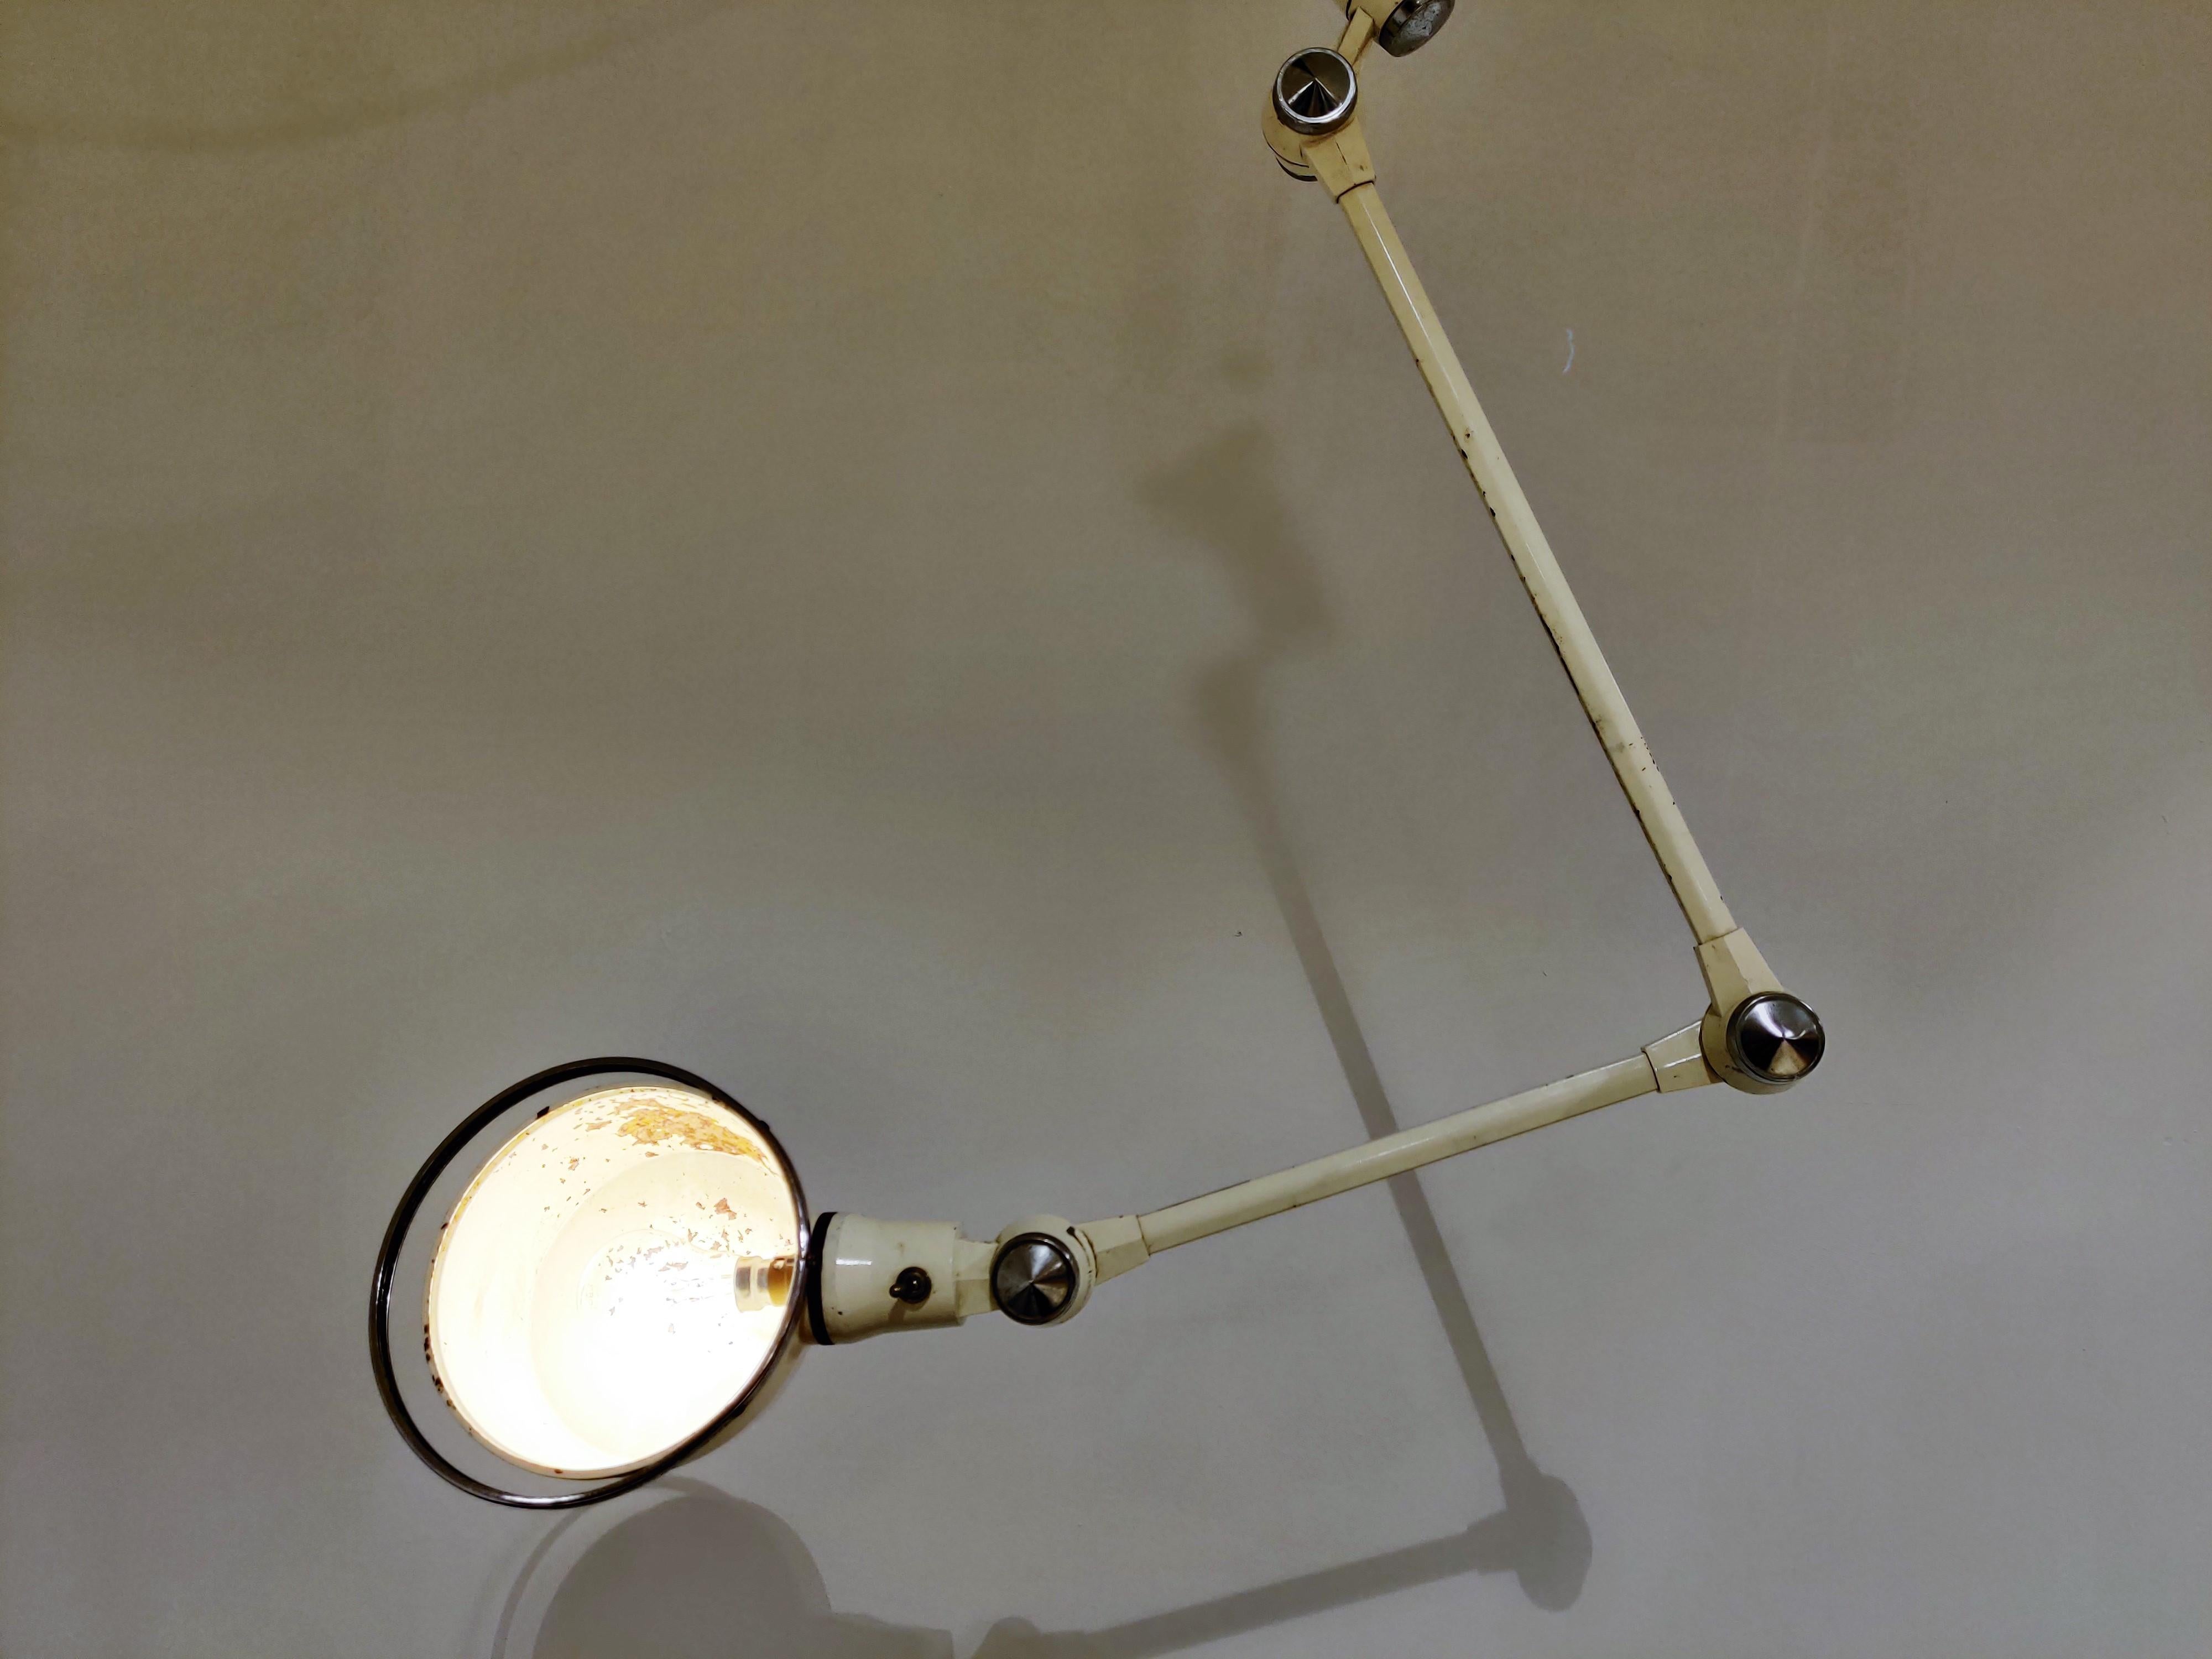 Charmante Industrie-Gelenk-Wand- oder Schreibtischlampe, die aus einem Krankenhaus gerettet wurde.

Diese Industrielampe ist mit 3 Gelenken ausgestattet und auch der Sockel ist drehbar, so dass diese Lampe 